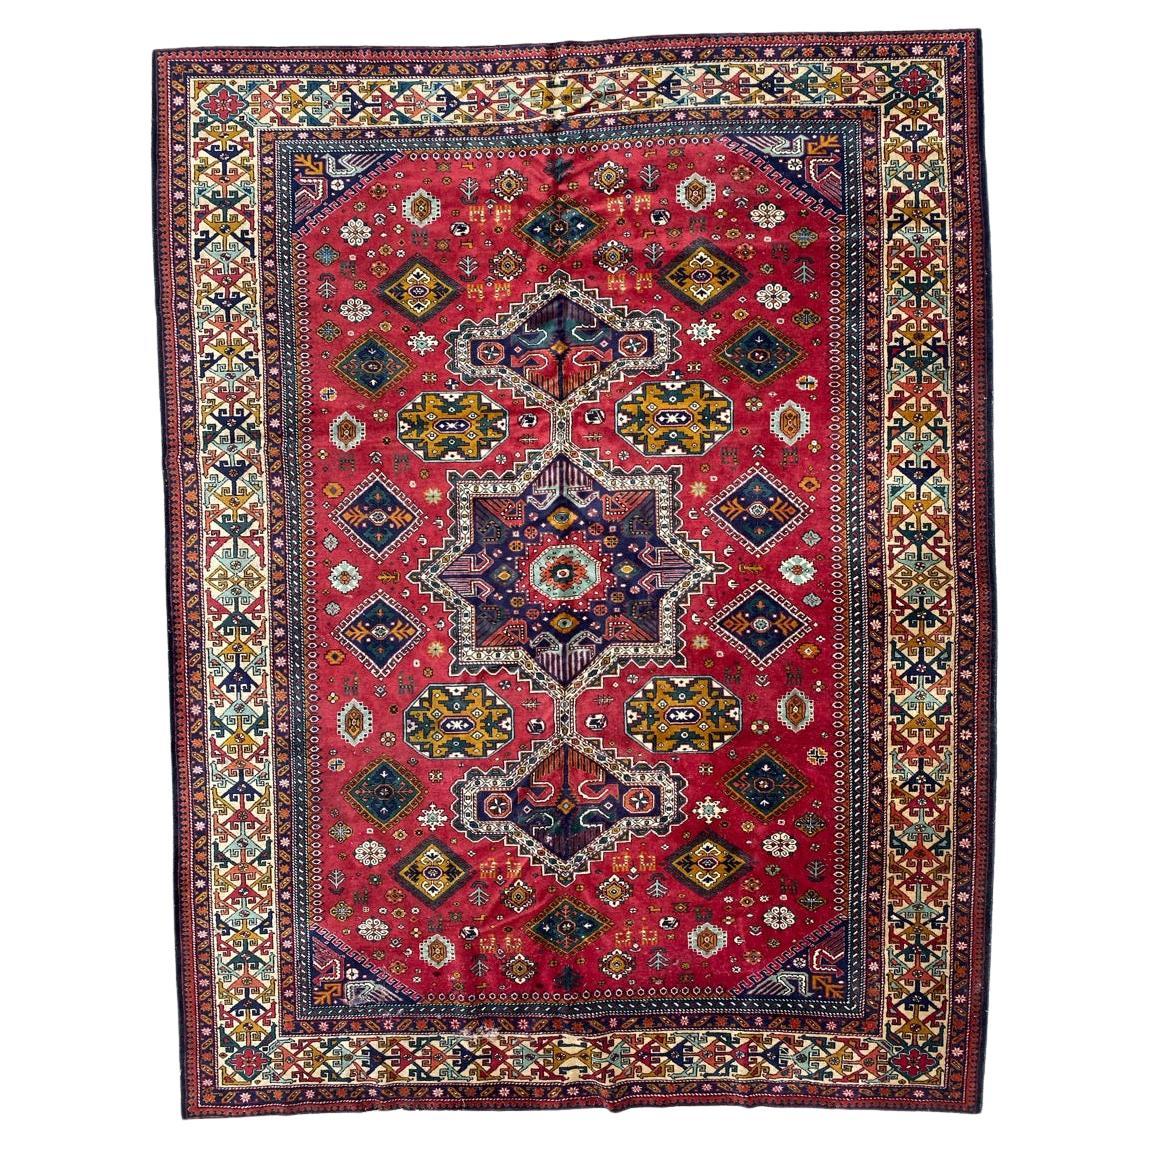 Bobyrug's Pretty Large Vintage Kaukasisch Aserbaidschan Teppich